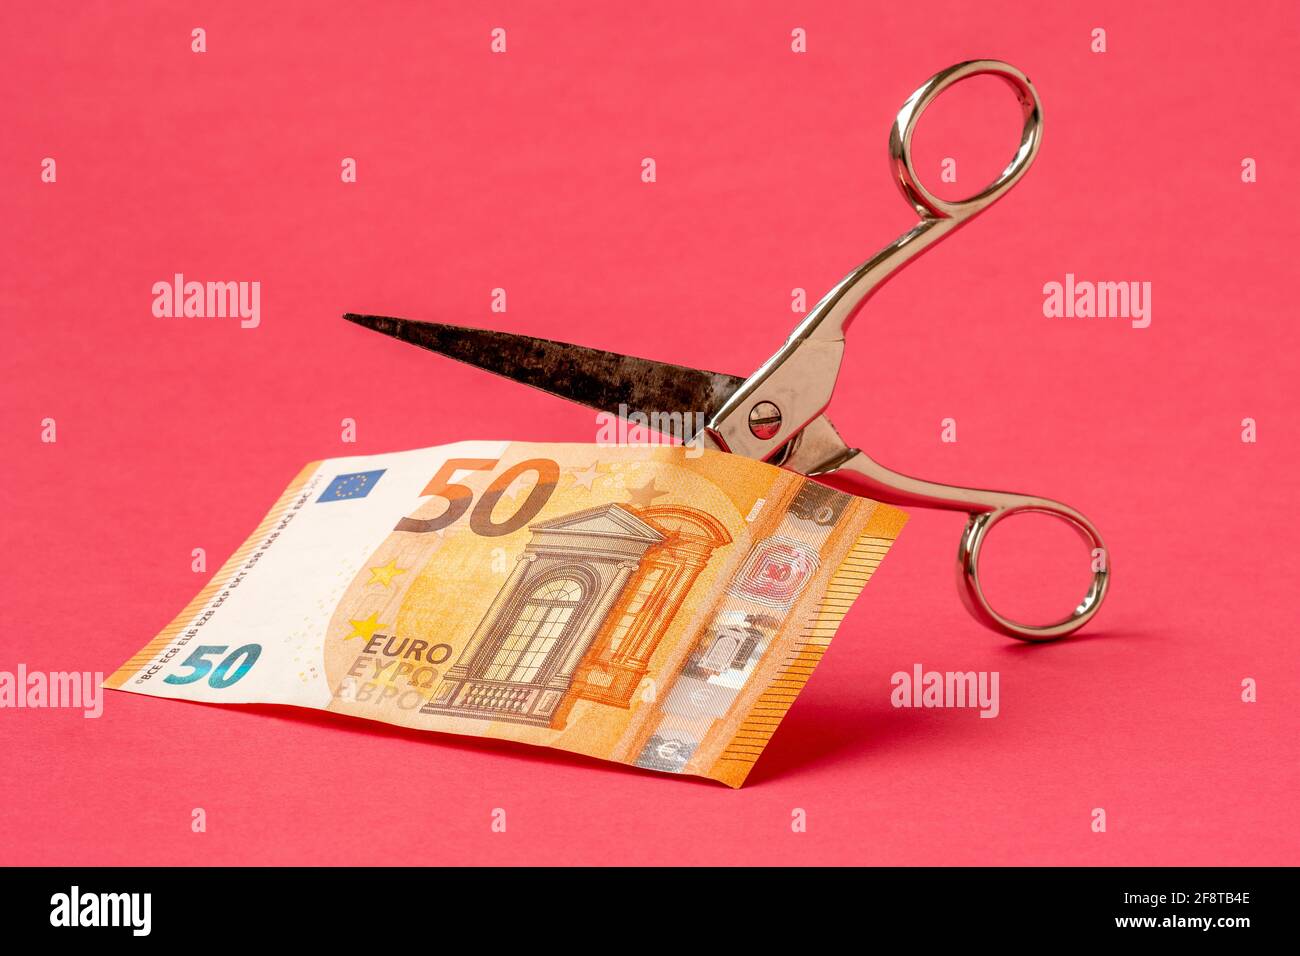 Couper cinquante euros avec des ciseaux sur fond rose. Concept sur le thème de la dévaluation de l'argent. Banque D'Images